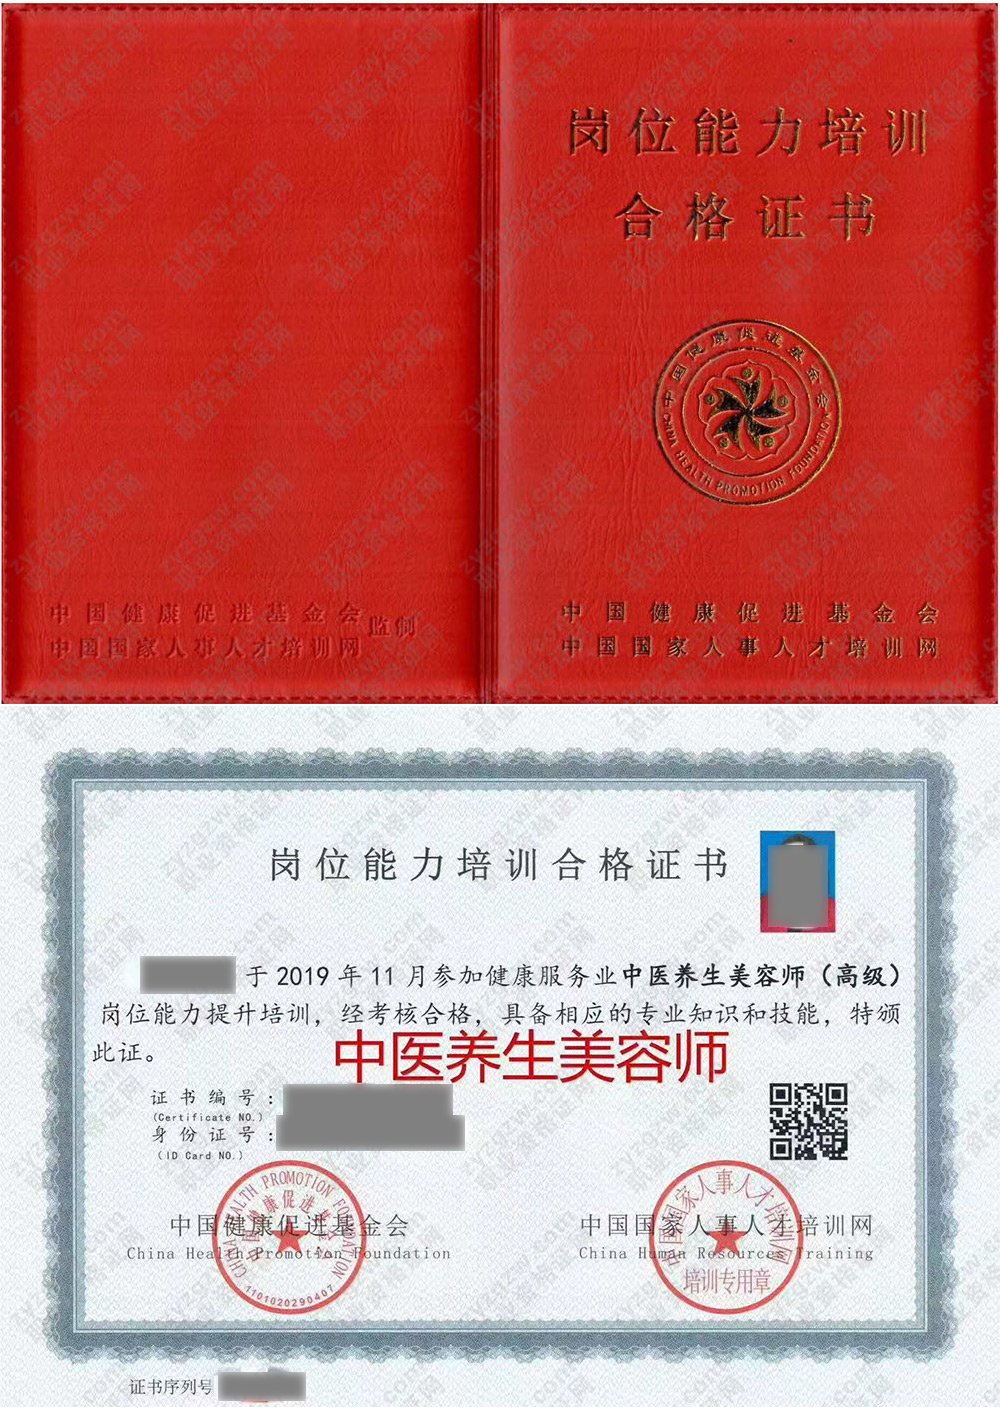 中国国家人事人才培训网 中医养生美容师 岗位能力培训合格证书